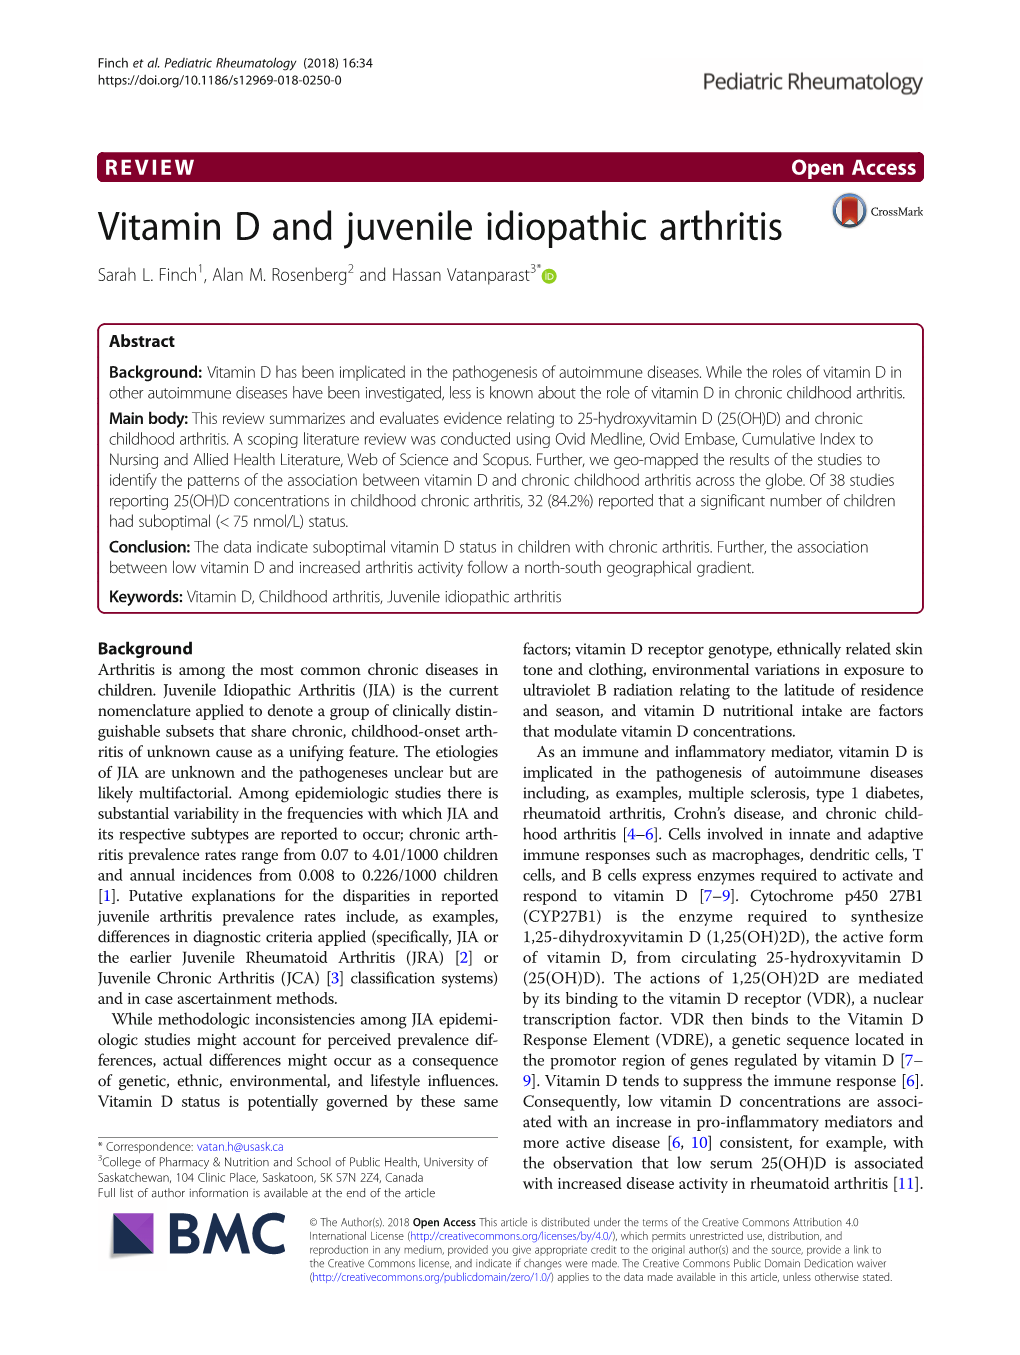 Vitamin D and Juvenile Idiopathic Arthritis Sarah L